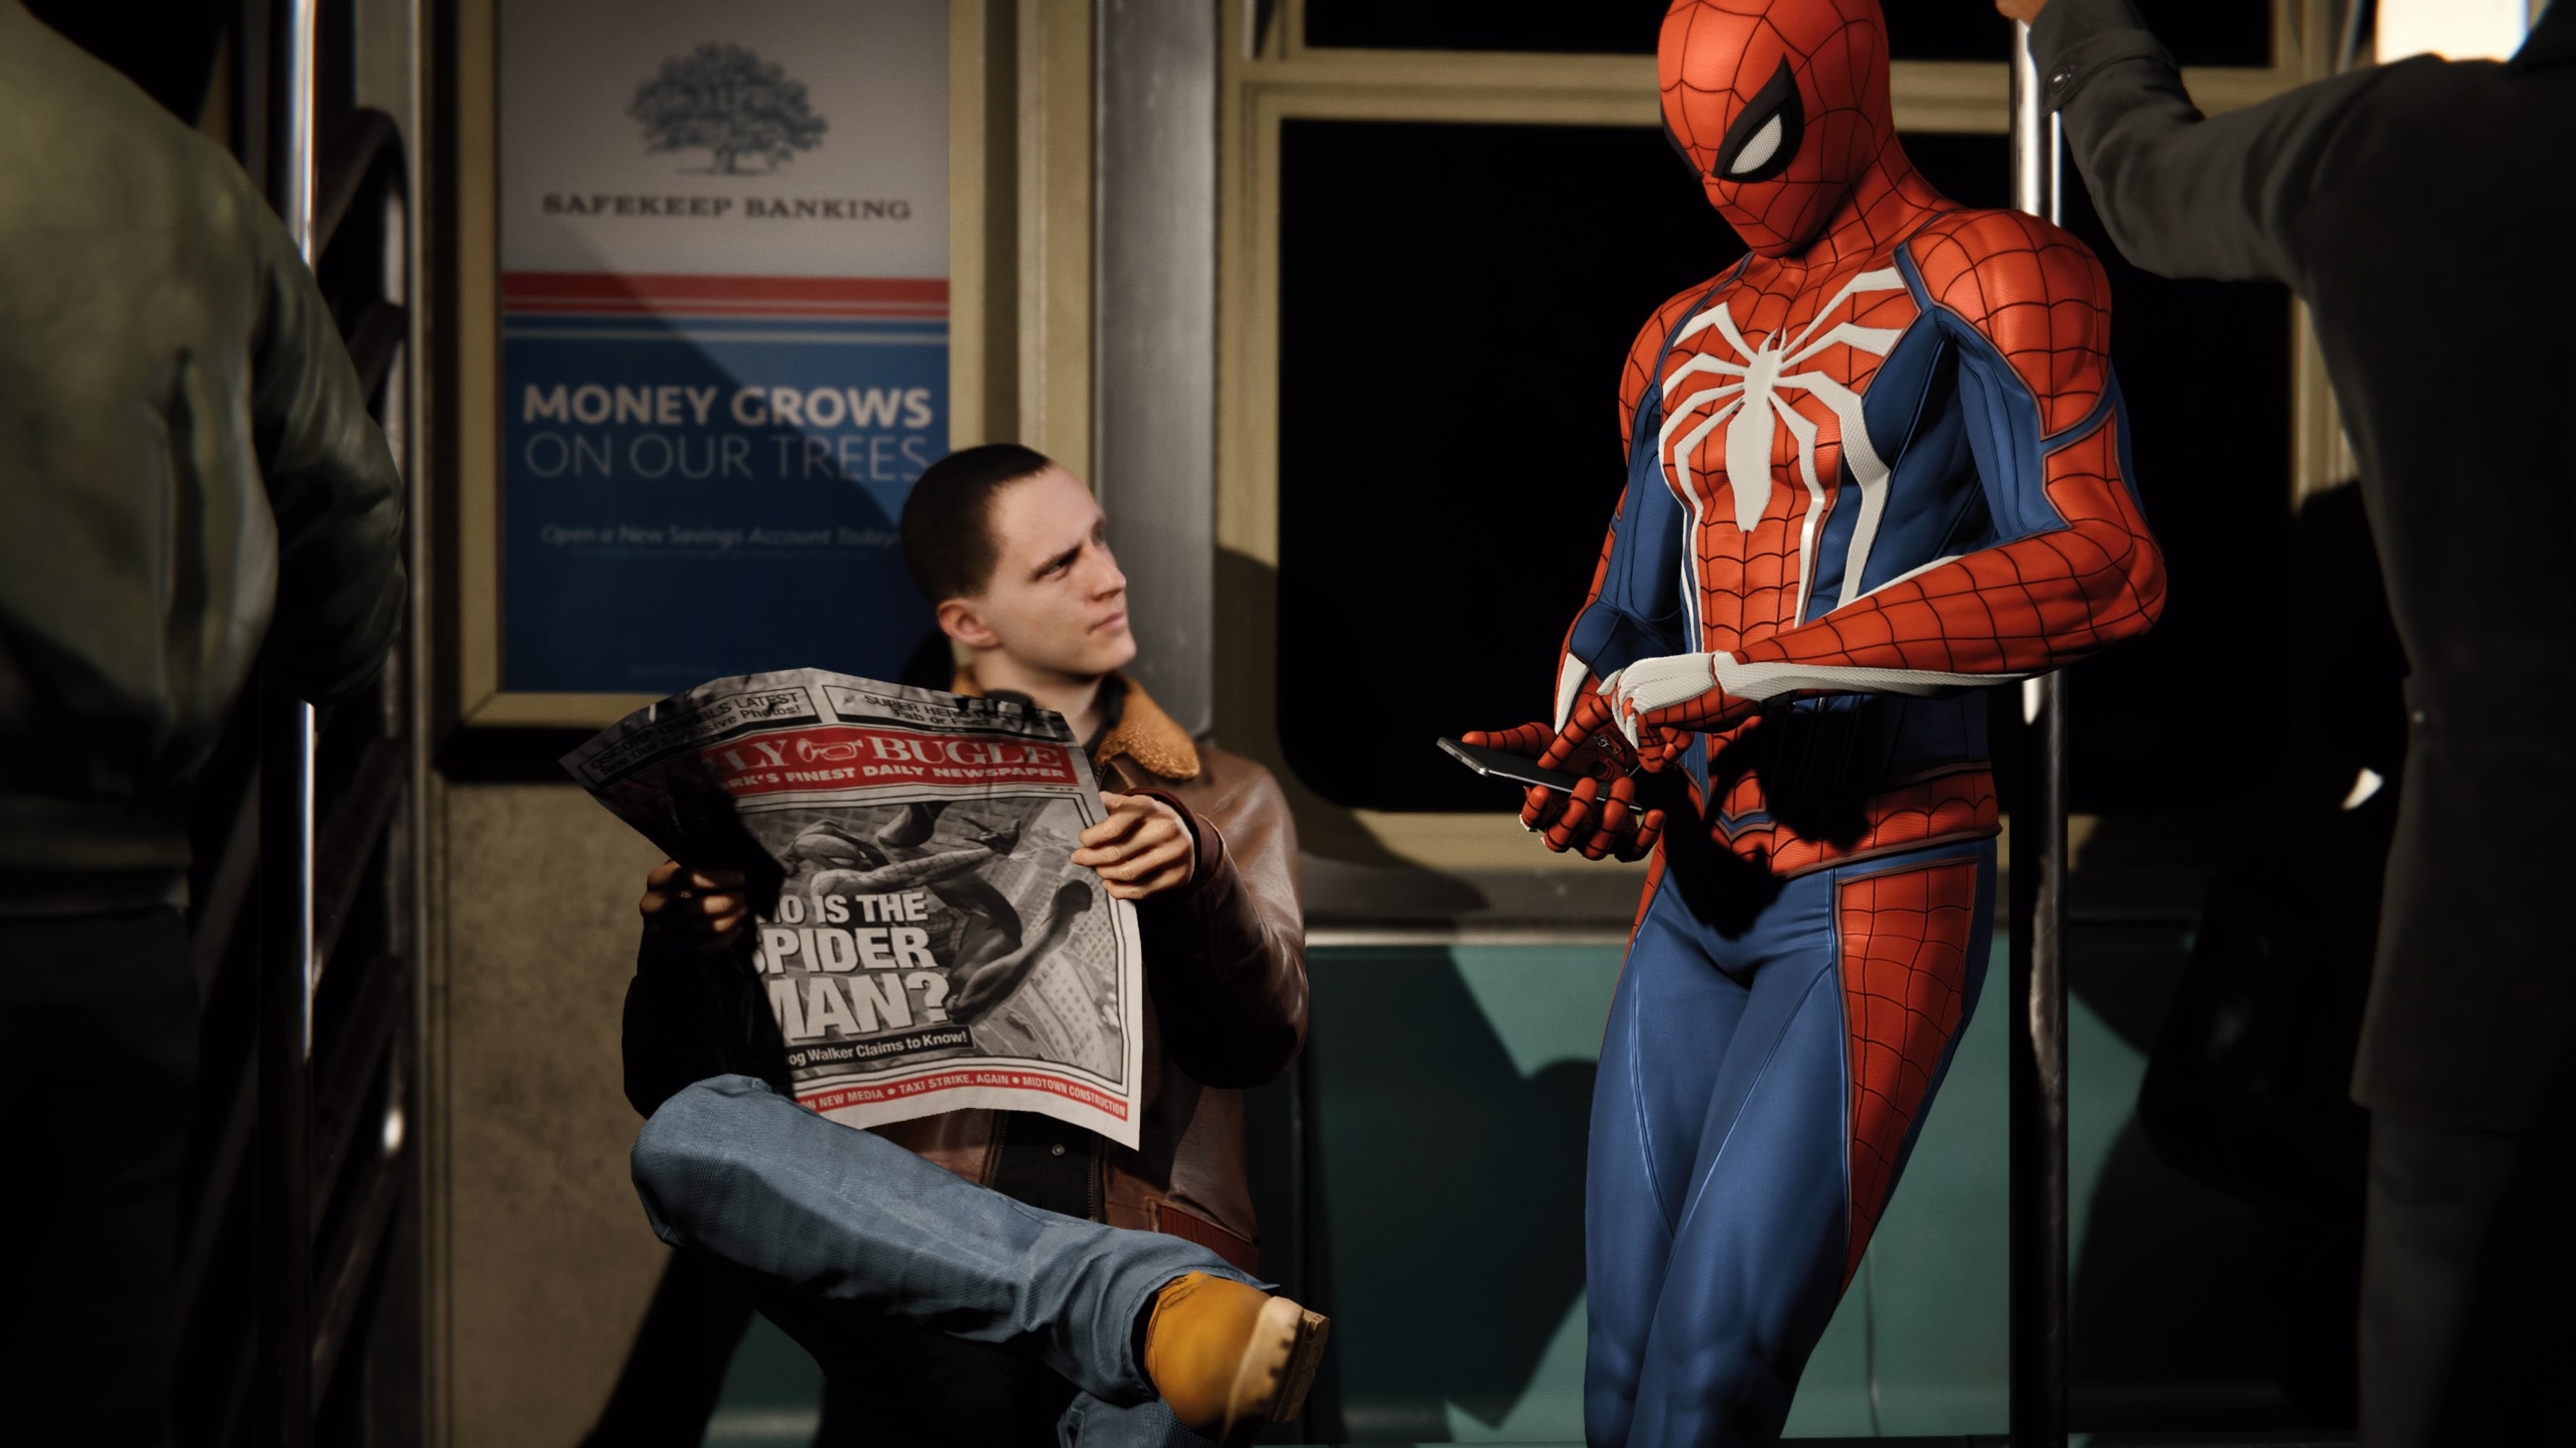 Immagine di I viaggi rapidi in Spider-Man hanno un tocco di genialità - editoriale